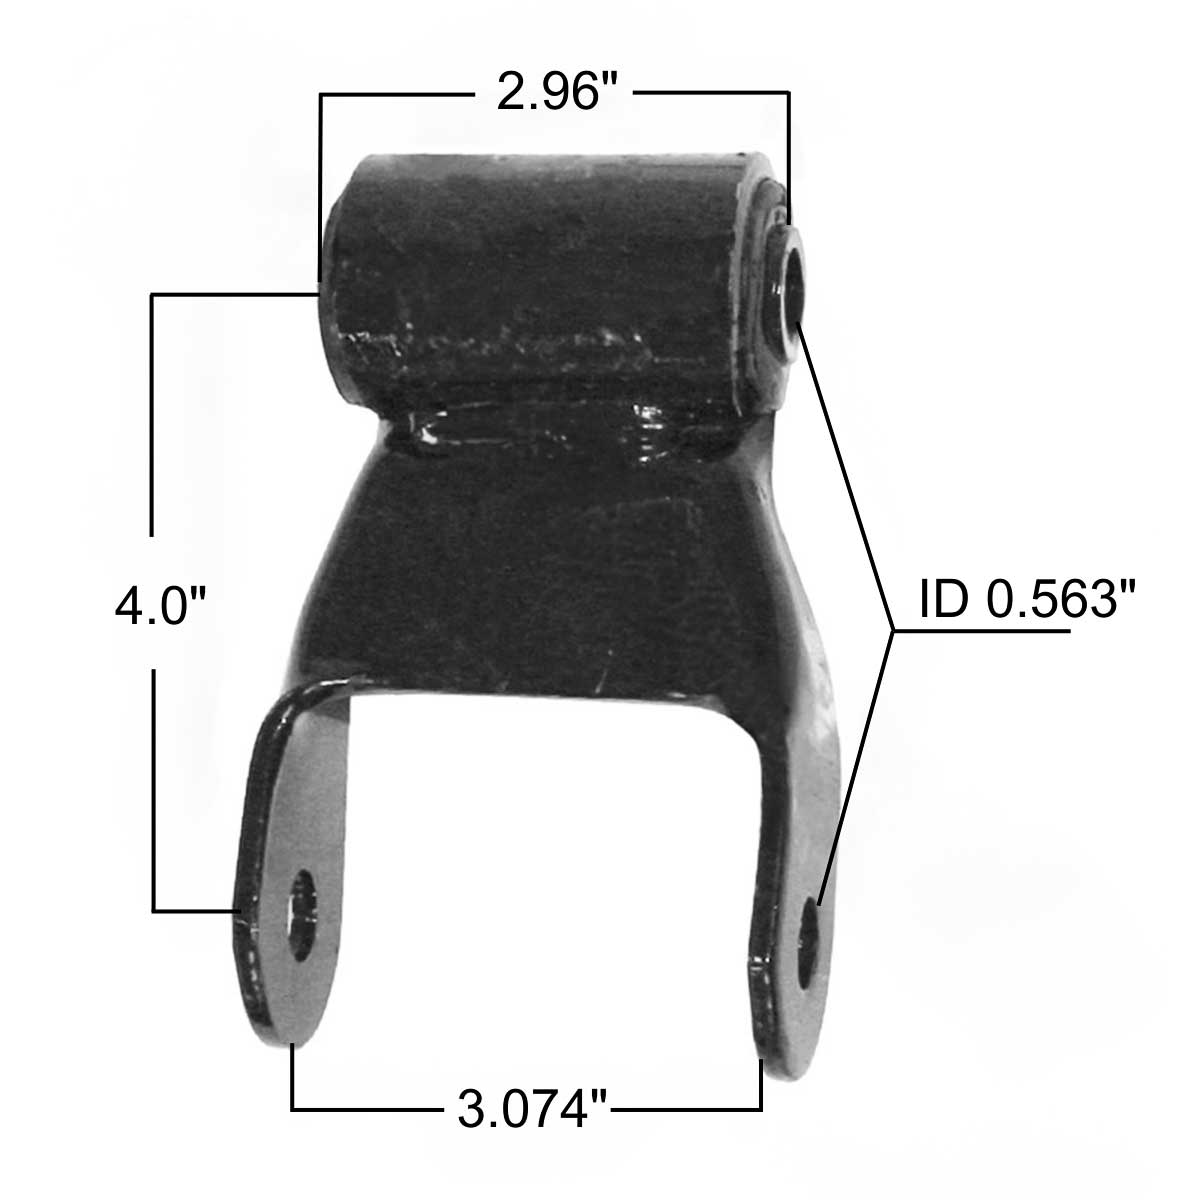 Dodge rear leaf spring shackle M1798 measurements.